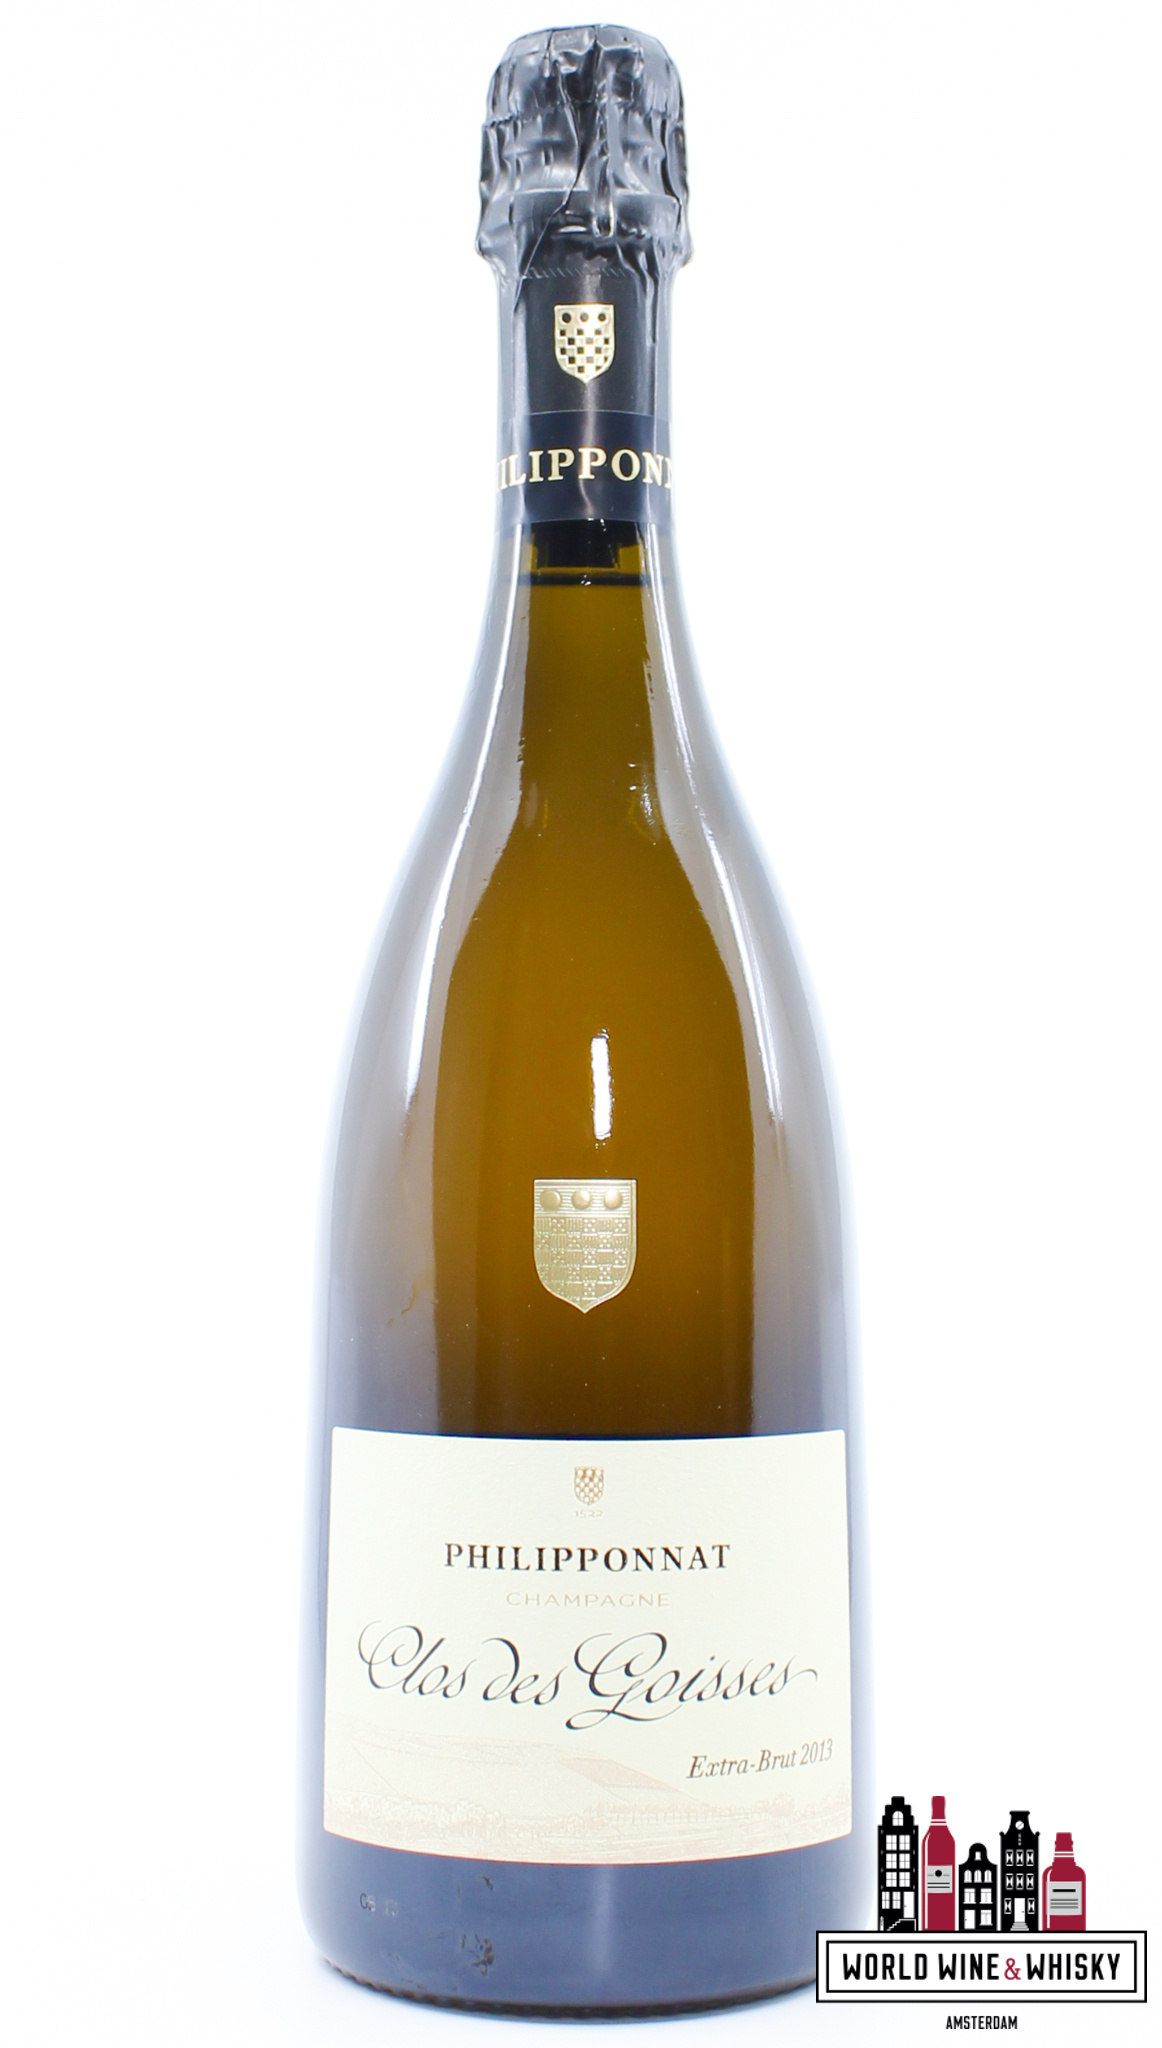 Philipponnat Philipponnat Champagne Aoc Extra Brut 'Clos des Goisses' 2013